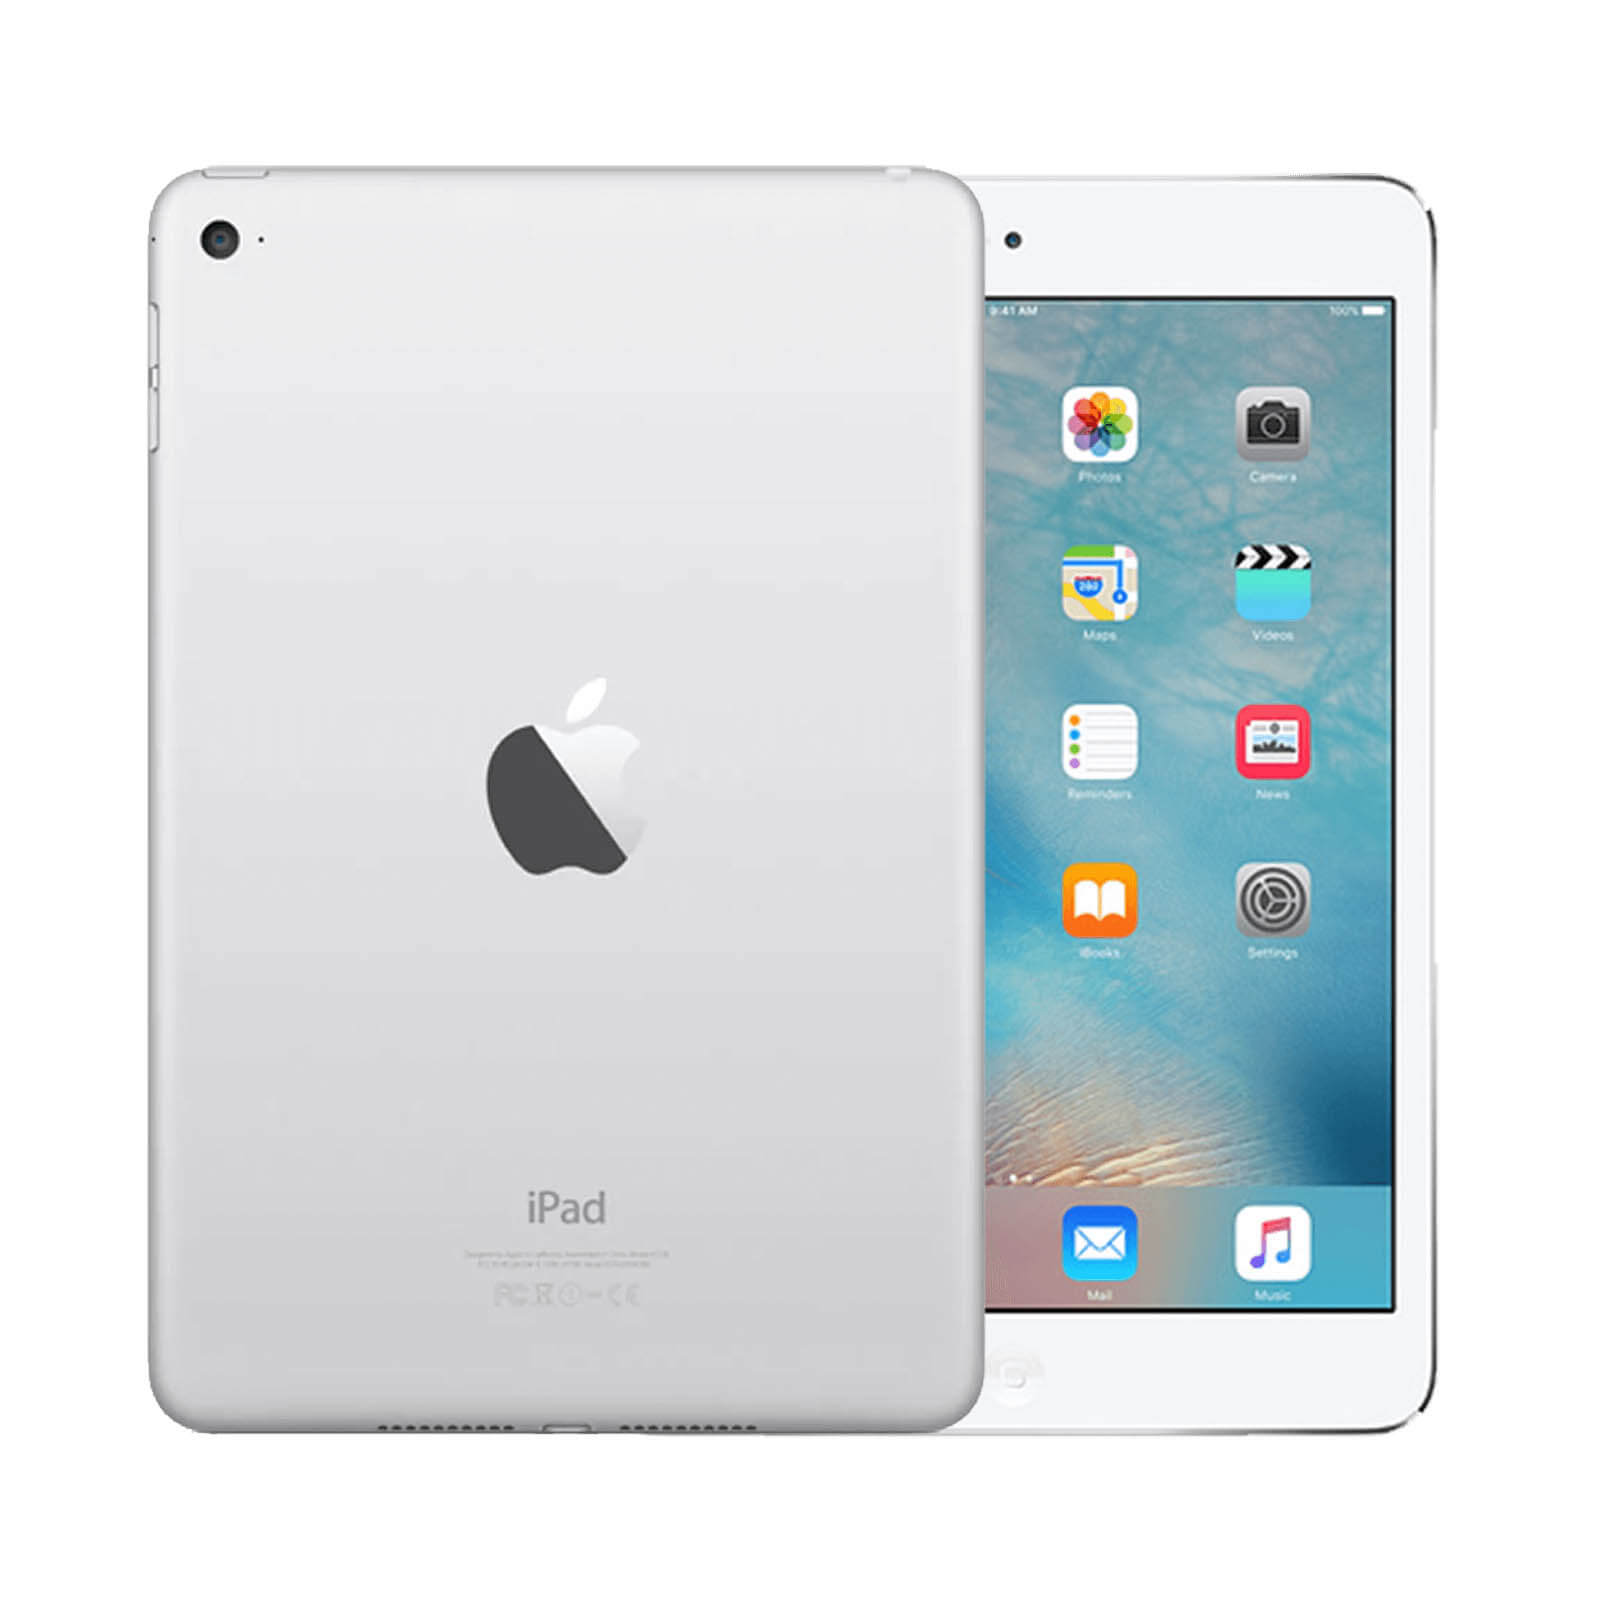 Apple iPad Mini 4 64GB Silver WiFi - Good 64GB Silver Good